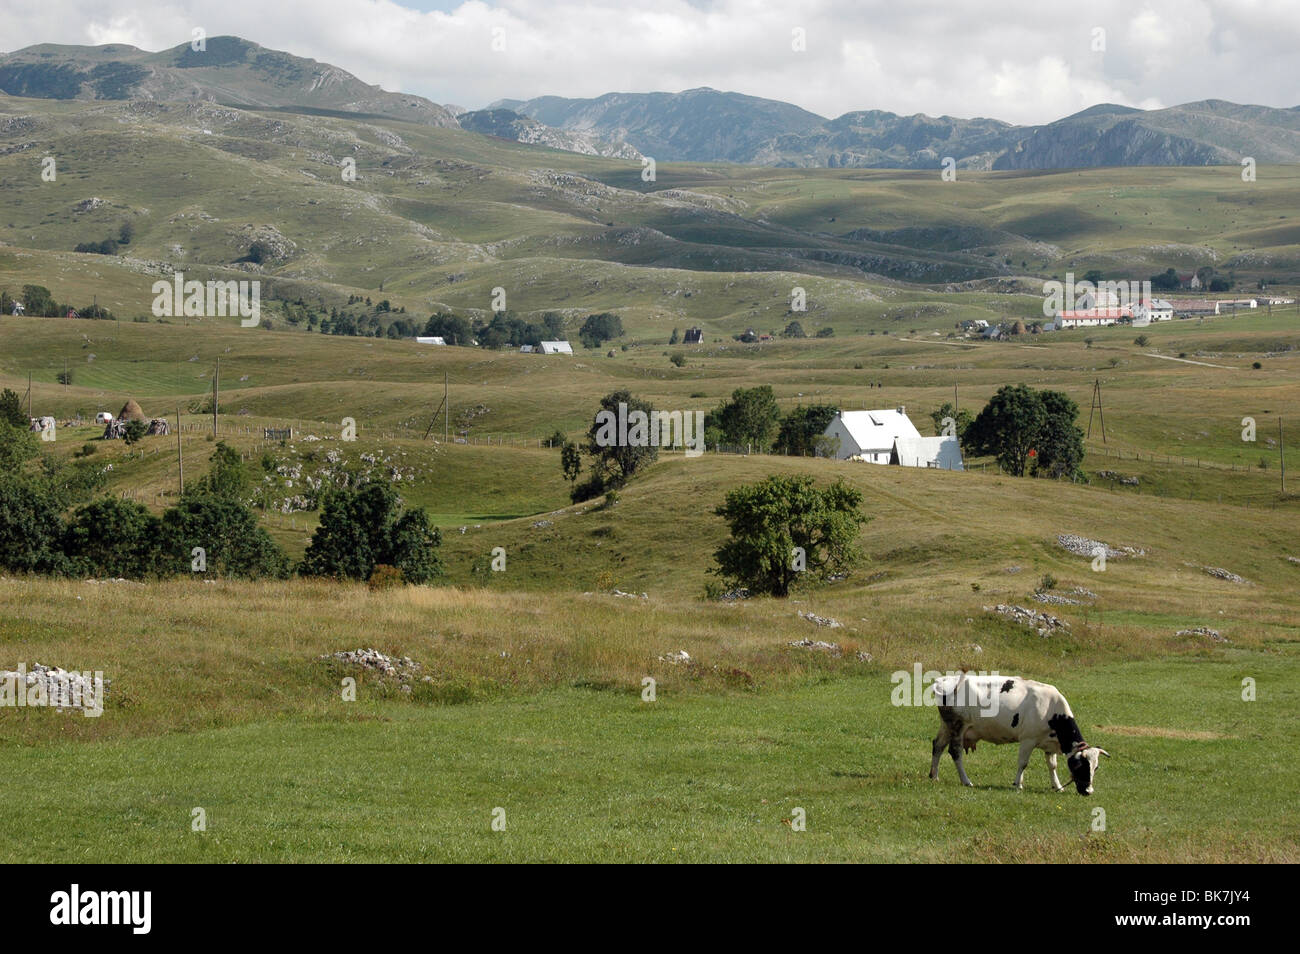 Une vache noire et blanche paître dans la campagne et les montagnes dans le village de Trsa, dans la région de Durmitor au Monténégro. Banque D'Images